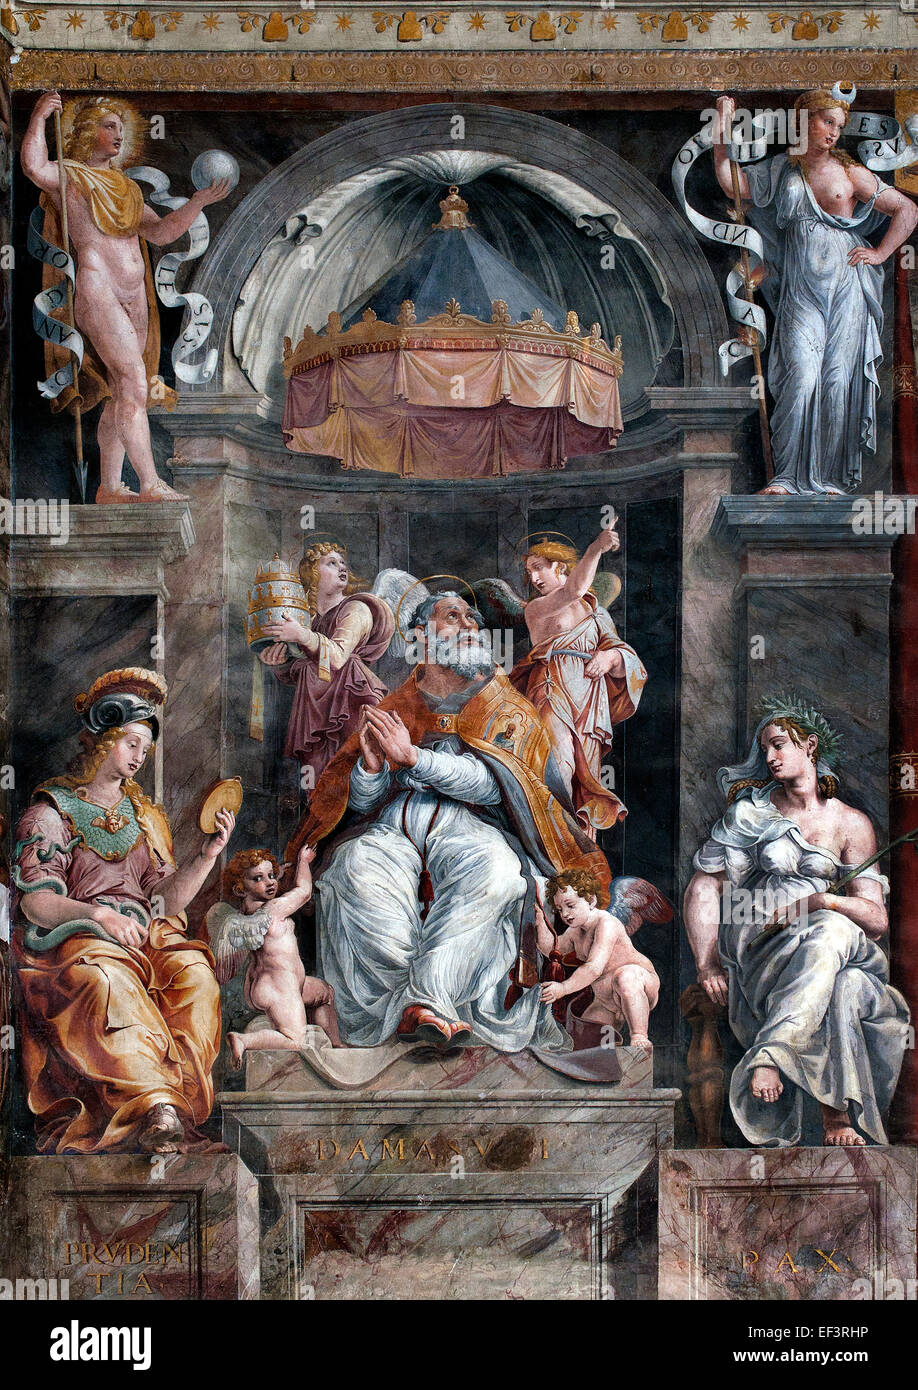 Papst Sylvester I, dessen Name auch Silvester geschrieben ist, war Papst von 314-335, Stanzen des Raffael (Tanze di Raffaello) Raffaello Sanzio da Urbino 1483 – 1520 fresco päpstlichen Gemächer Vatikan Rom Italien Stockfoto